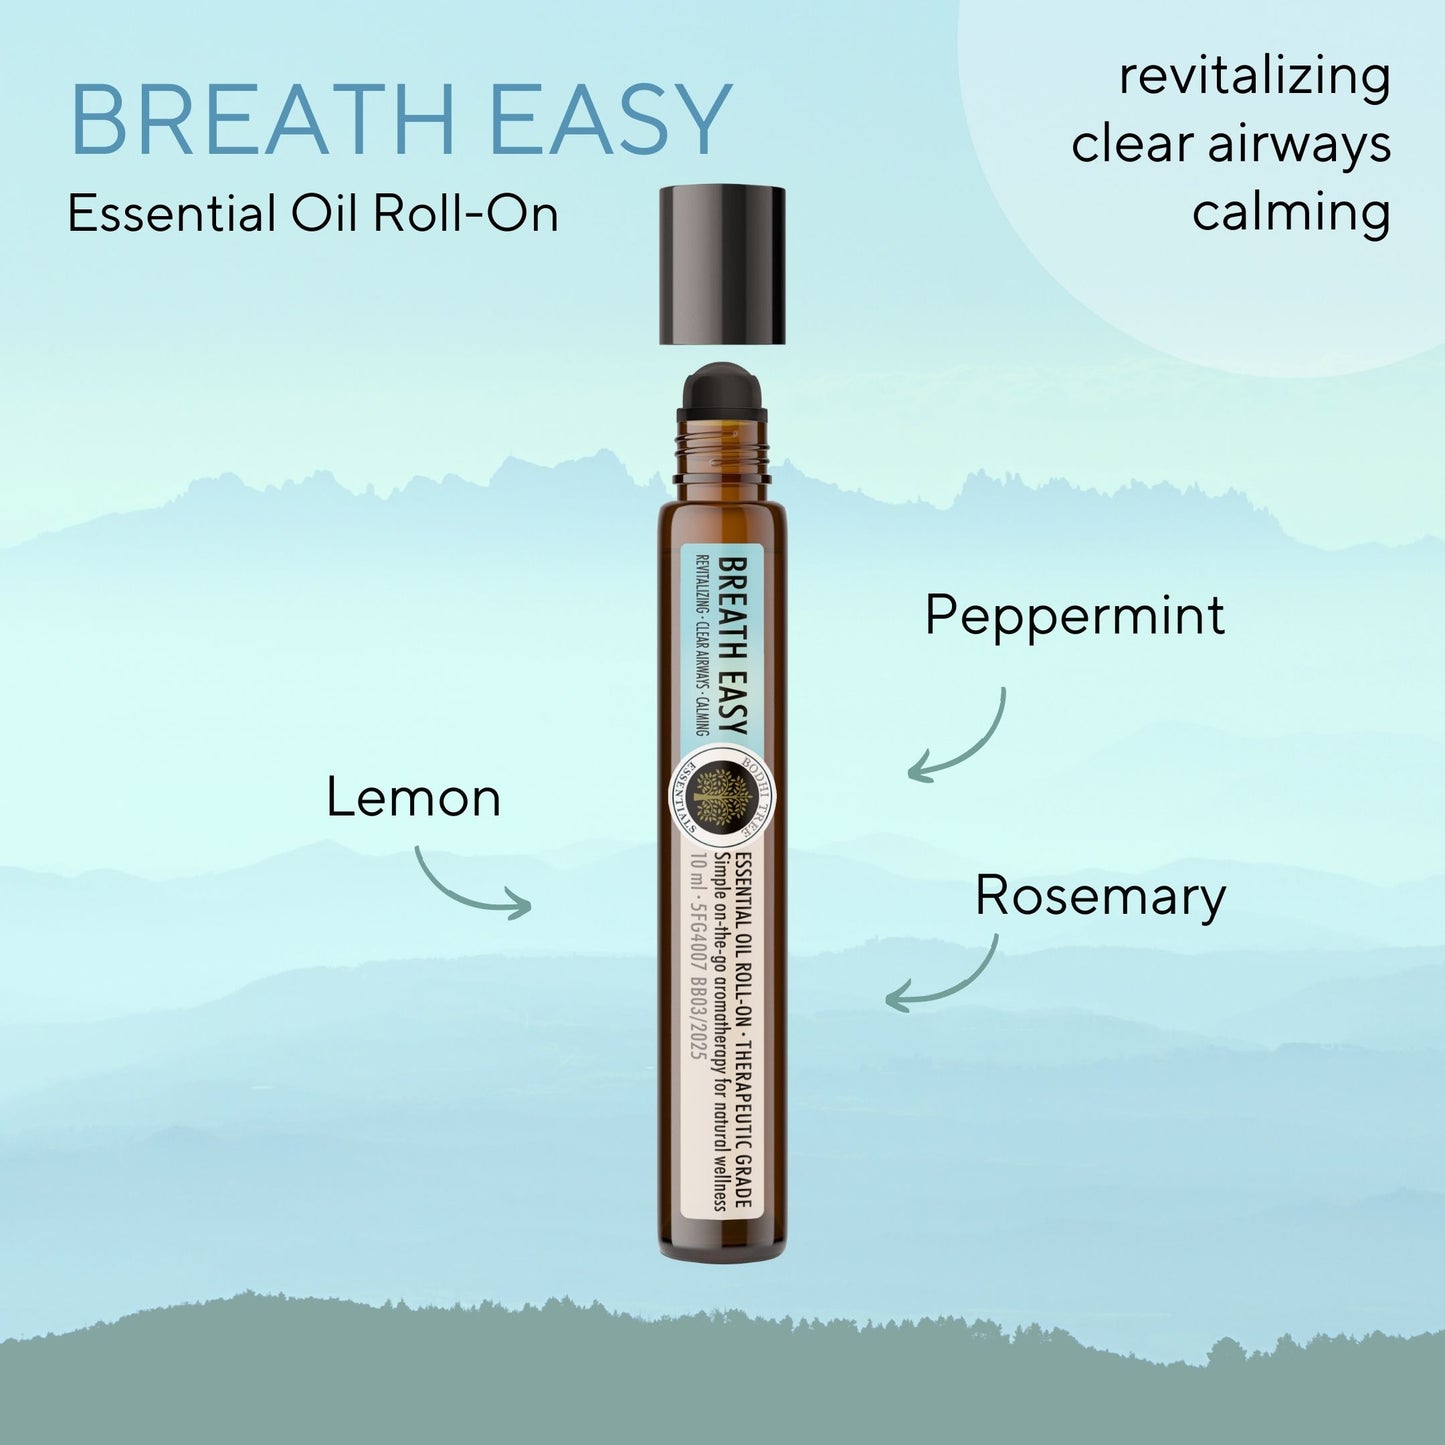 Bodhi Tree Essential Oil Roll-On Breath Easy